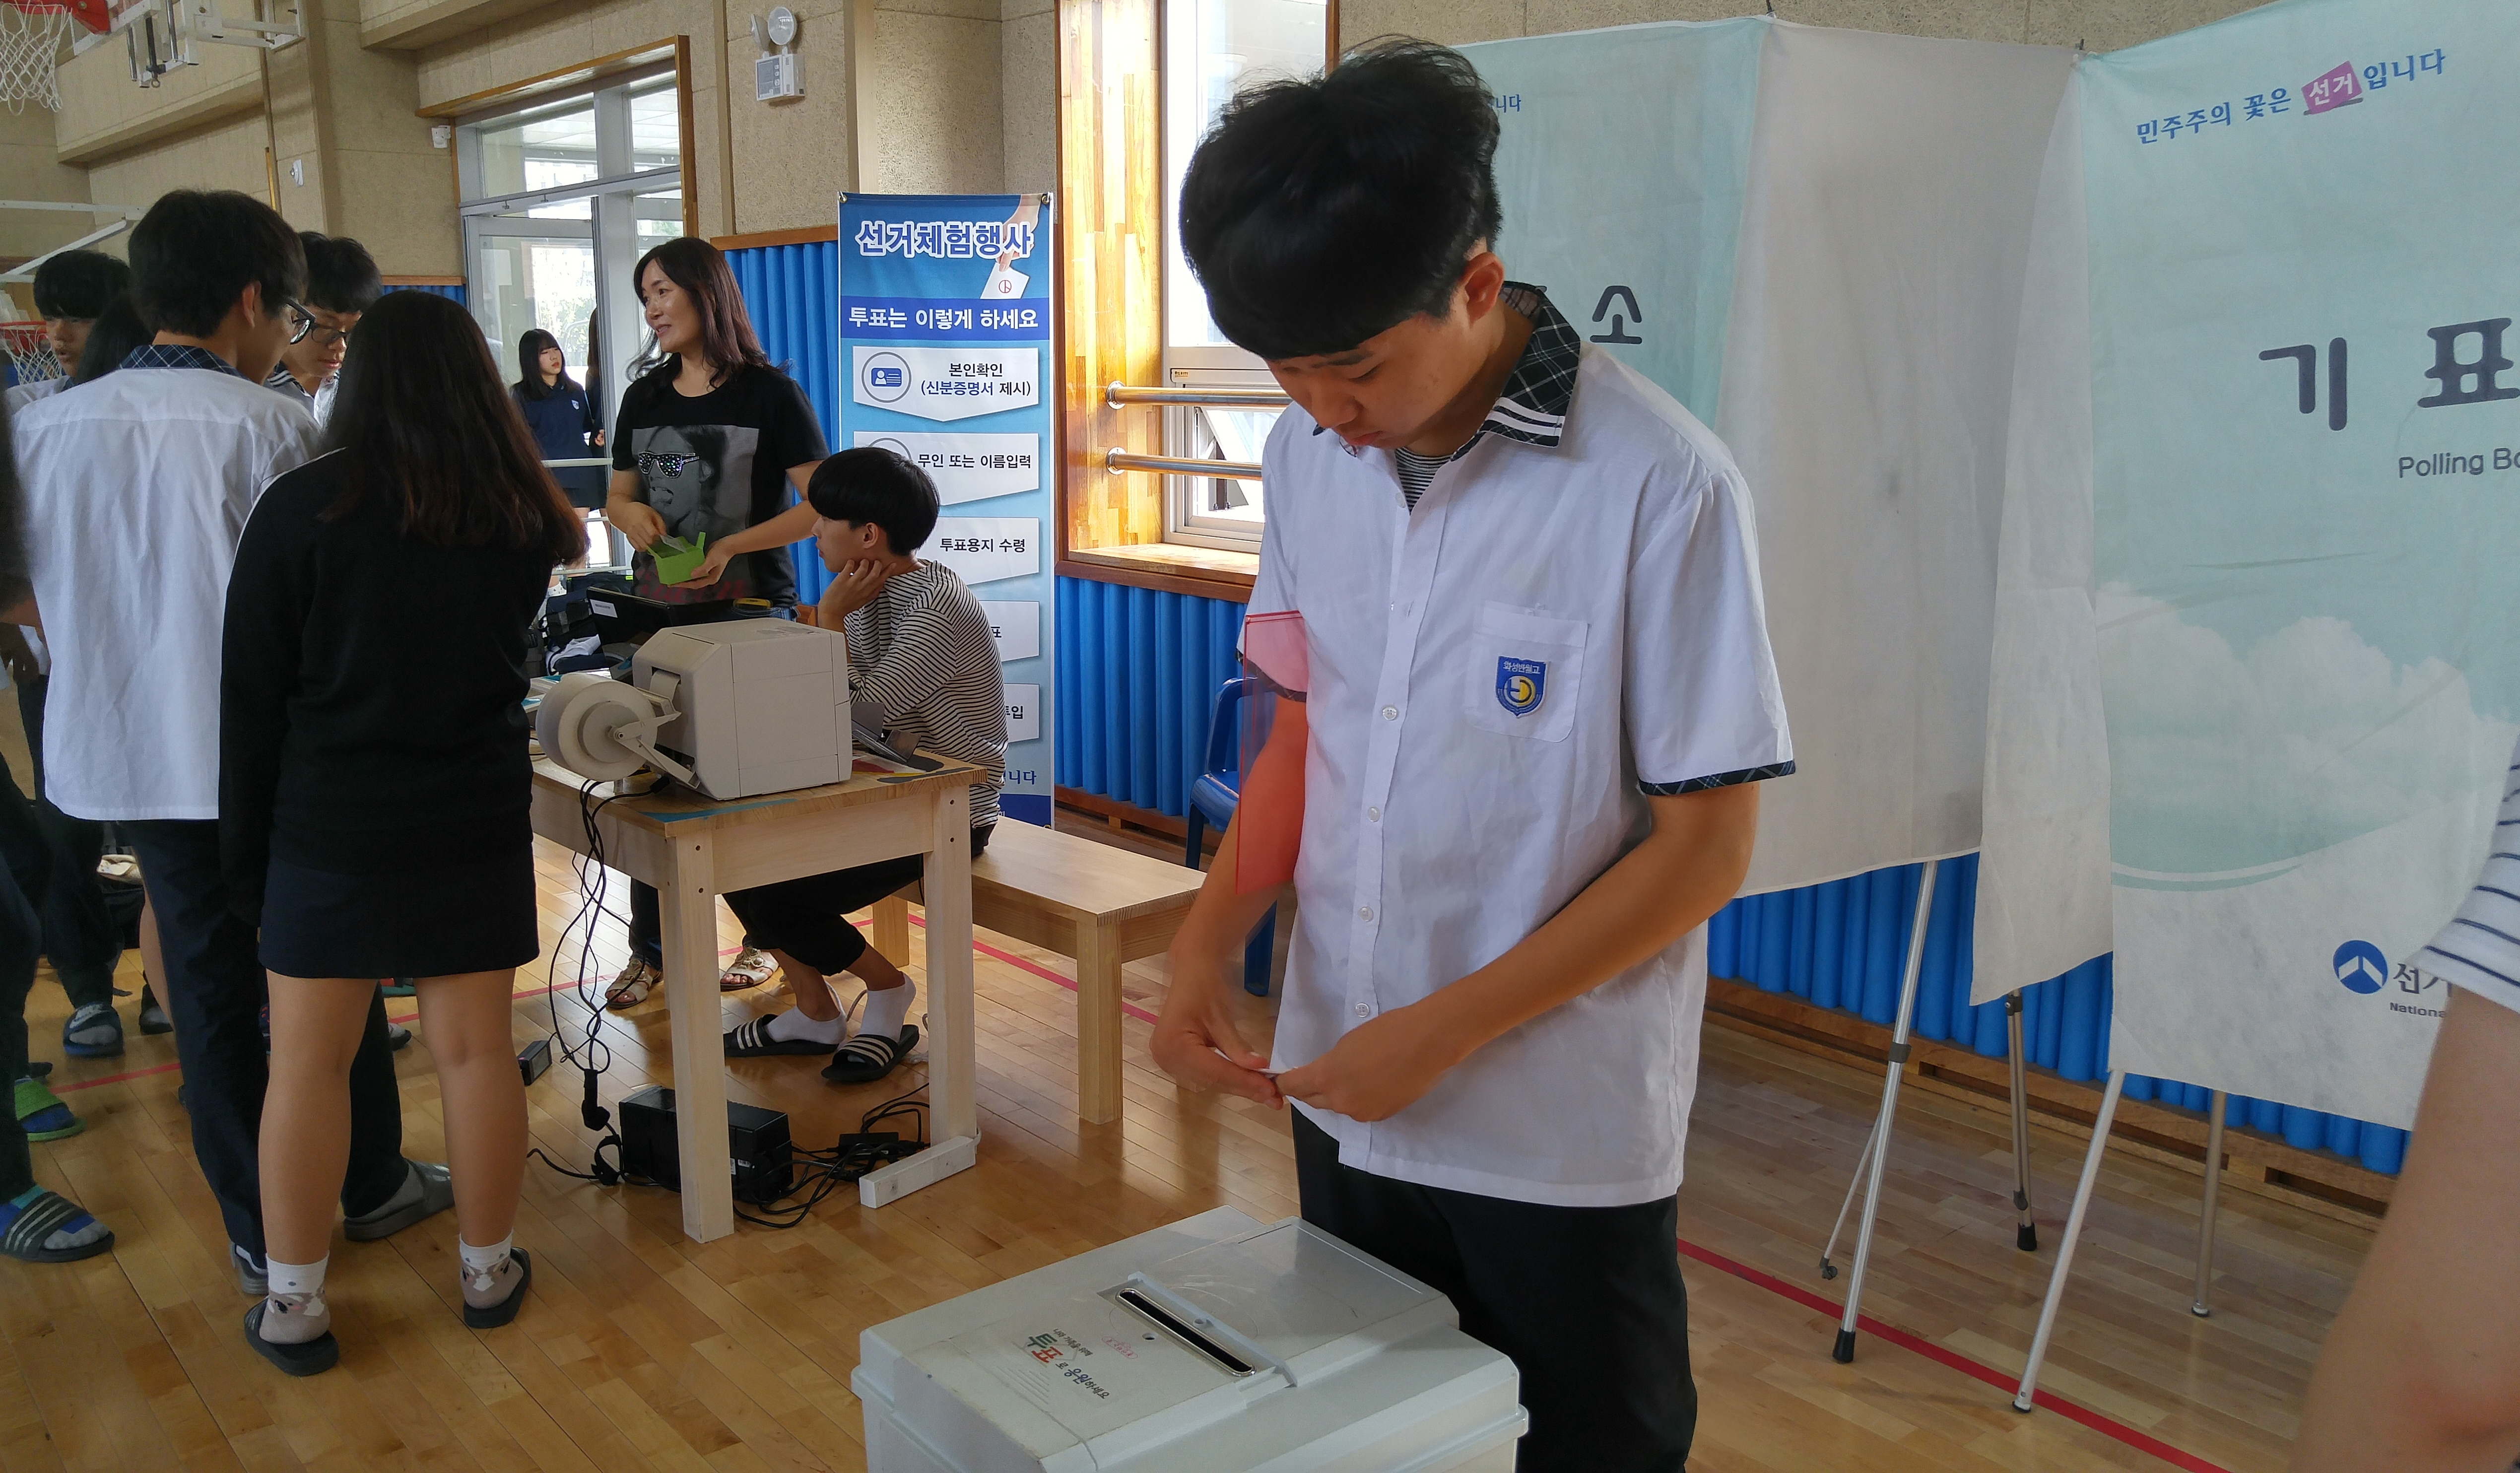 투표용지발급기를 이용한 선거체험행사에 학생들이 참여하고 있는 사진